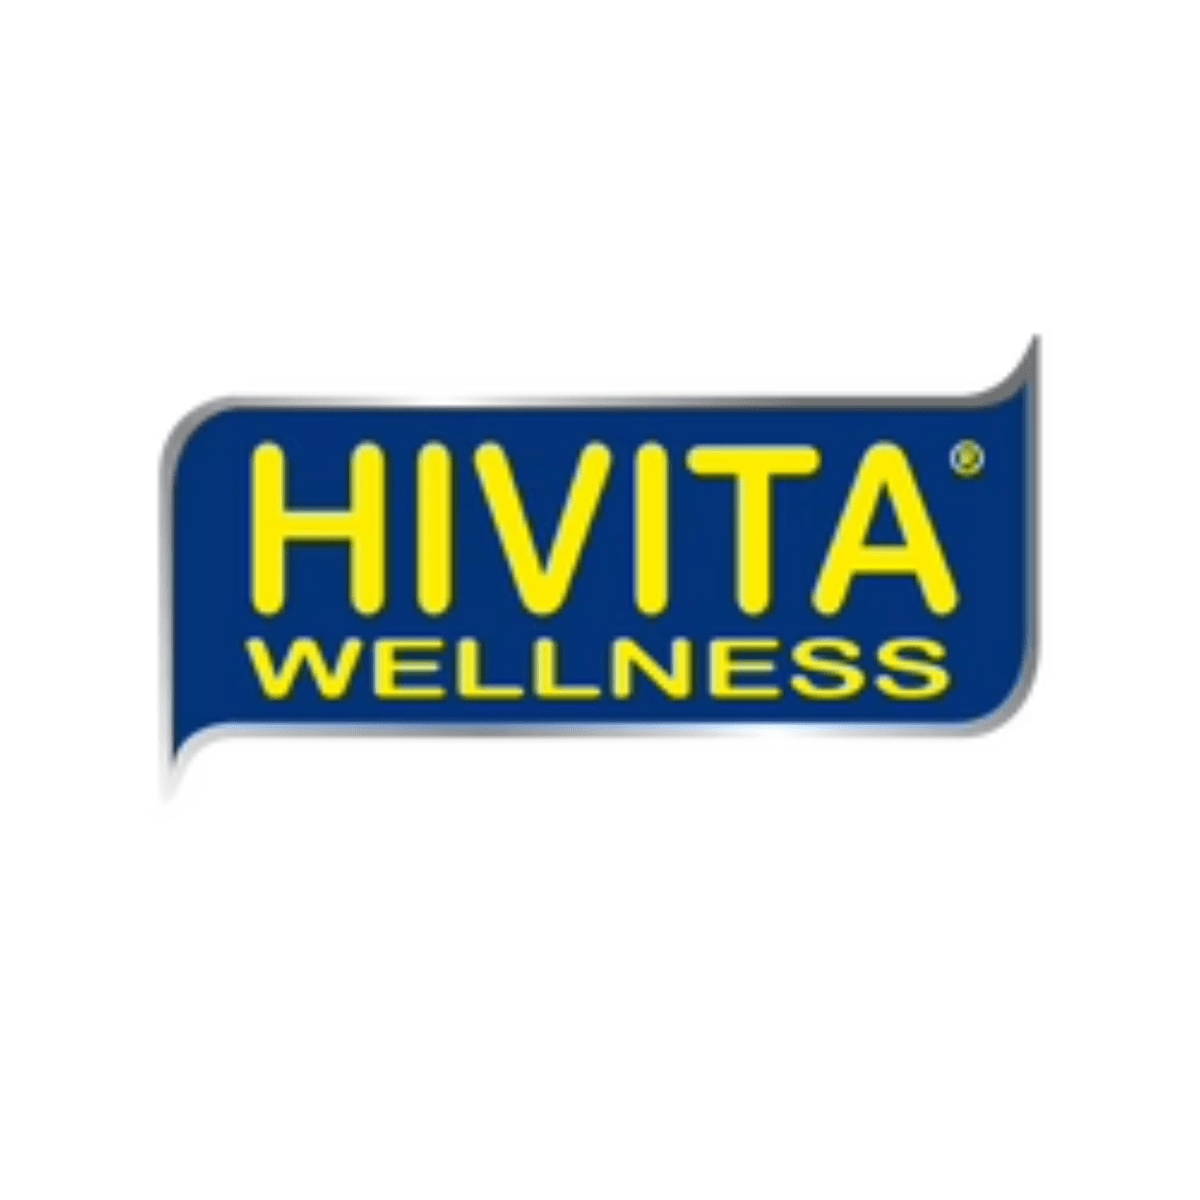 Hivita Wellness